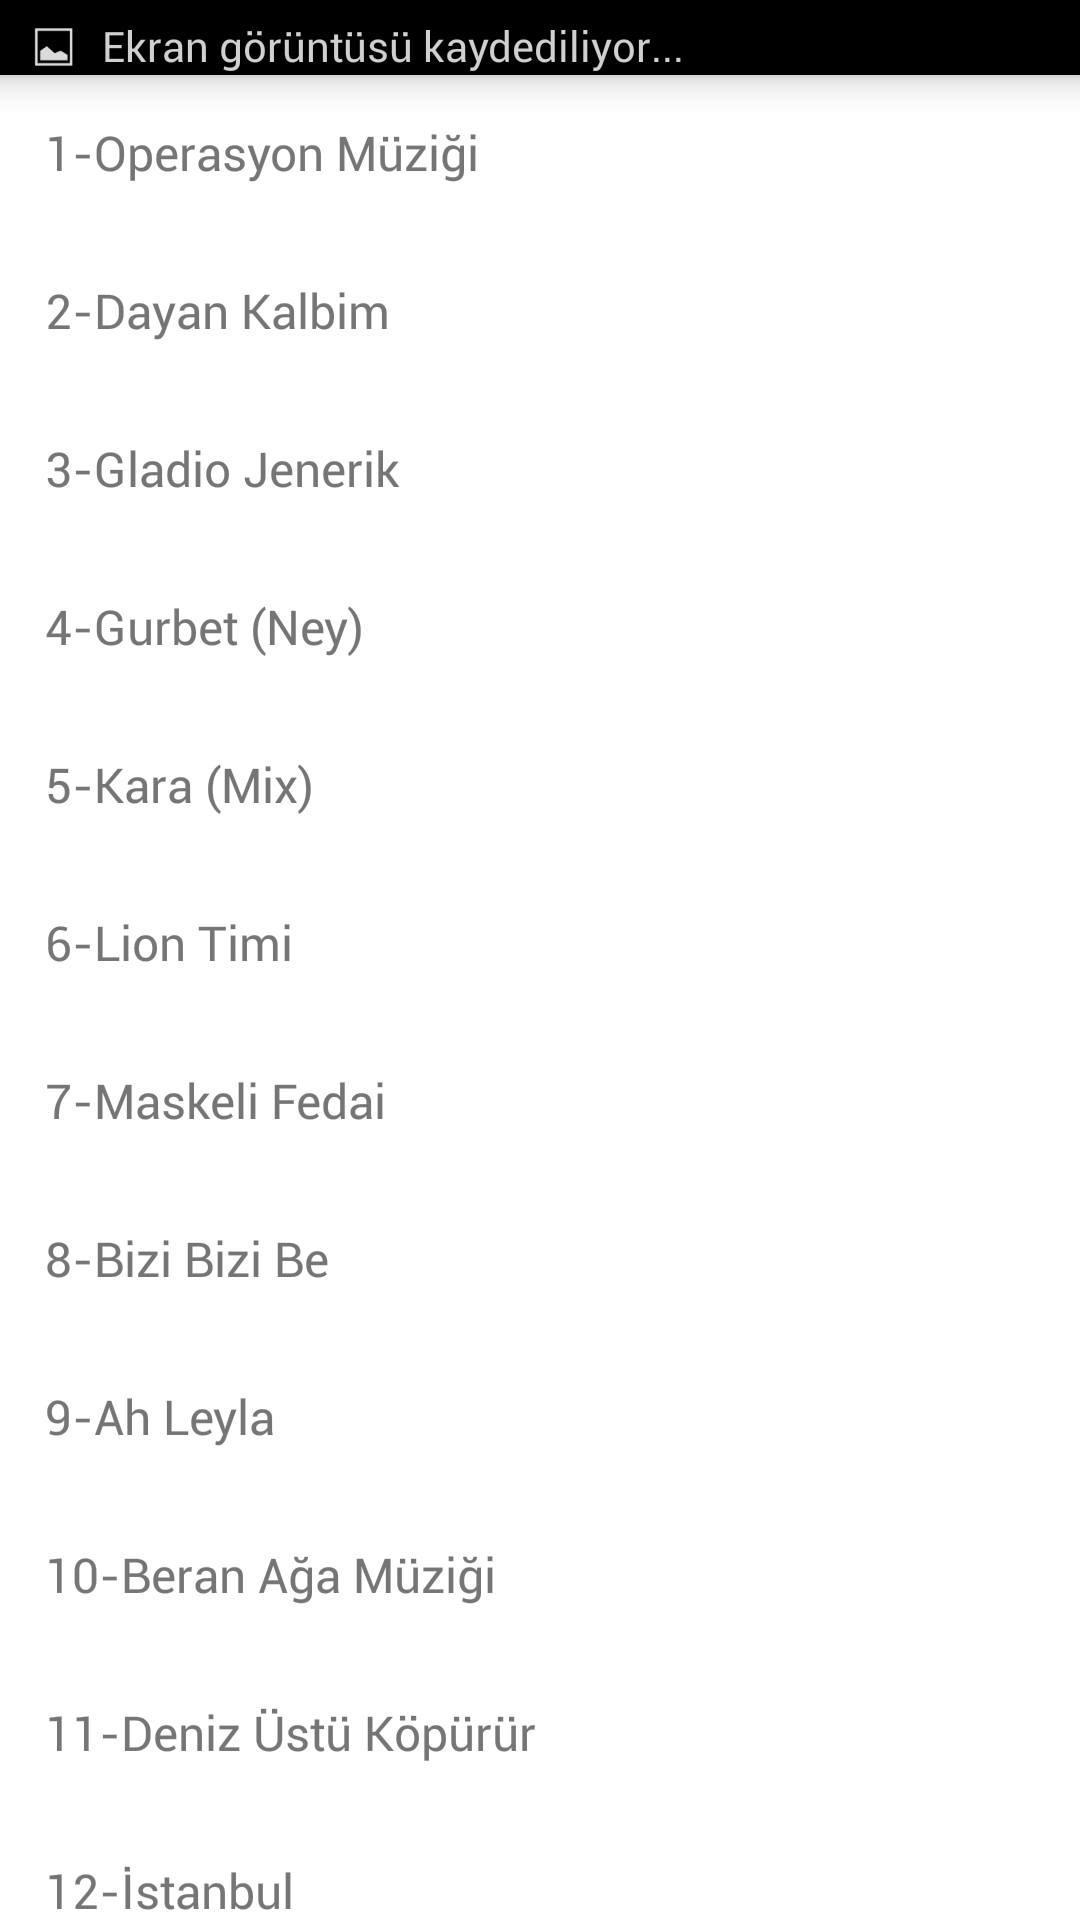 Kurtlar Vadisi Pusu Müzikleri for Android - APK Download